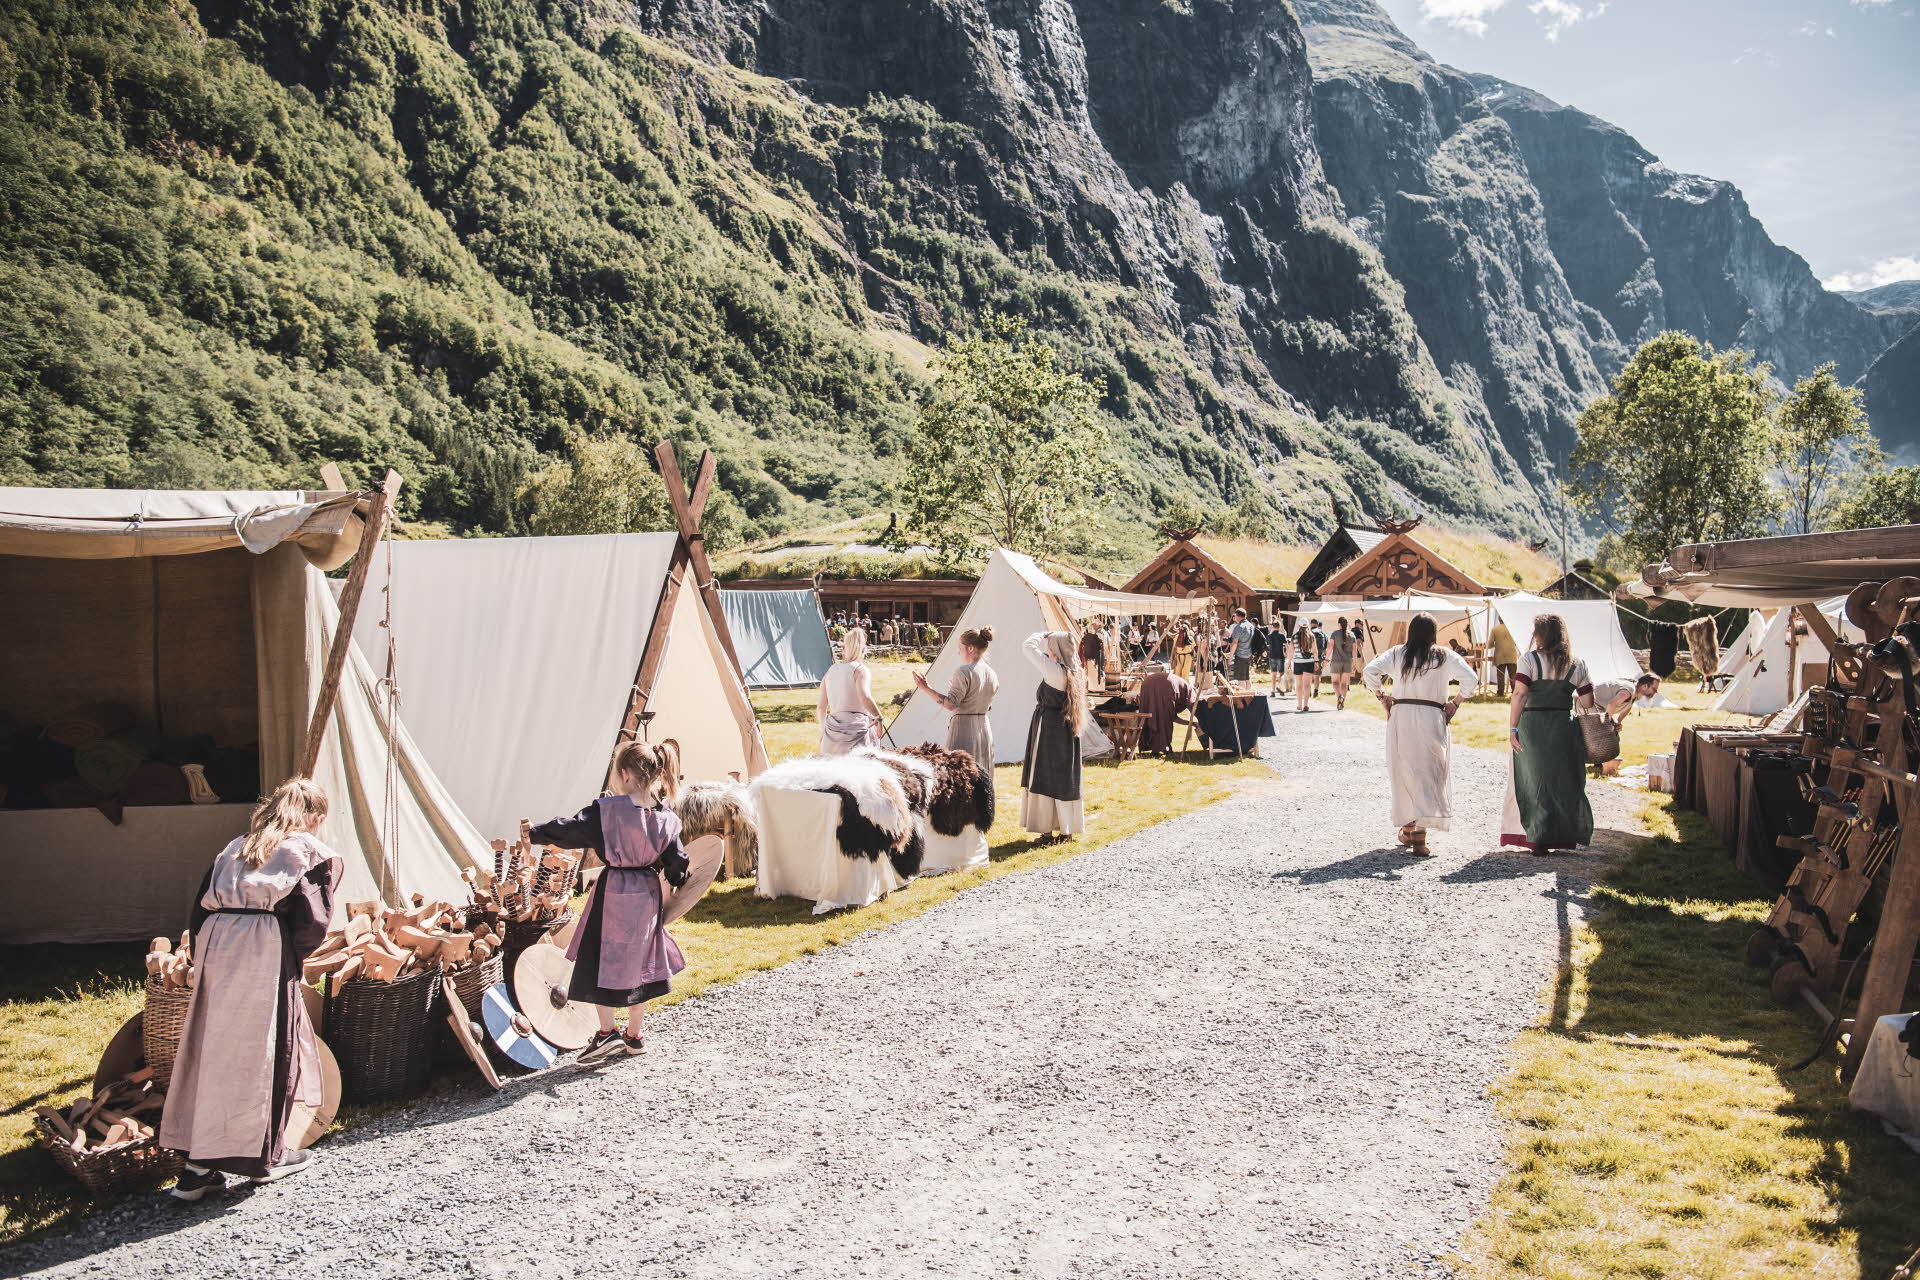 Menschen in Wikingerkleidung vor Zelten in Gudvangen präsentieren handgefertigte Produkte